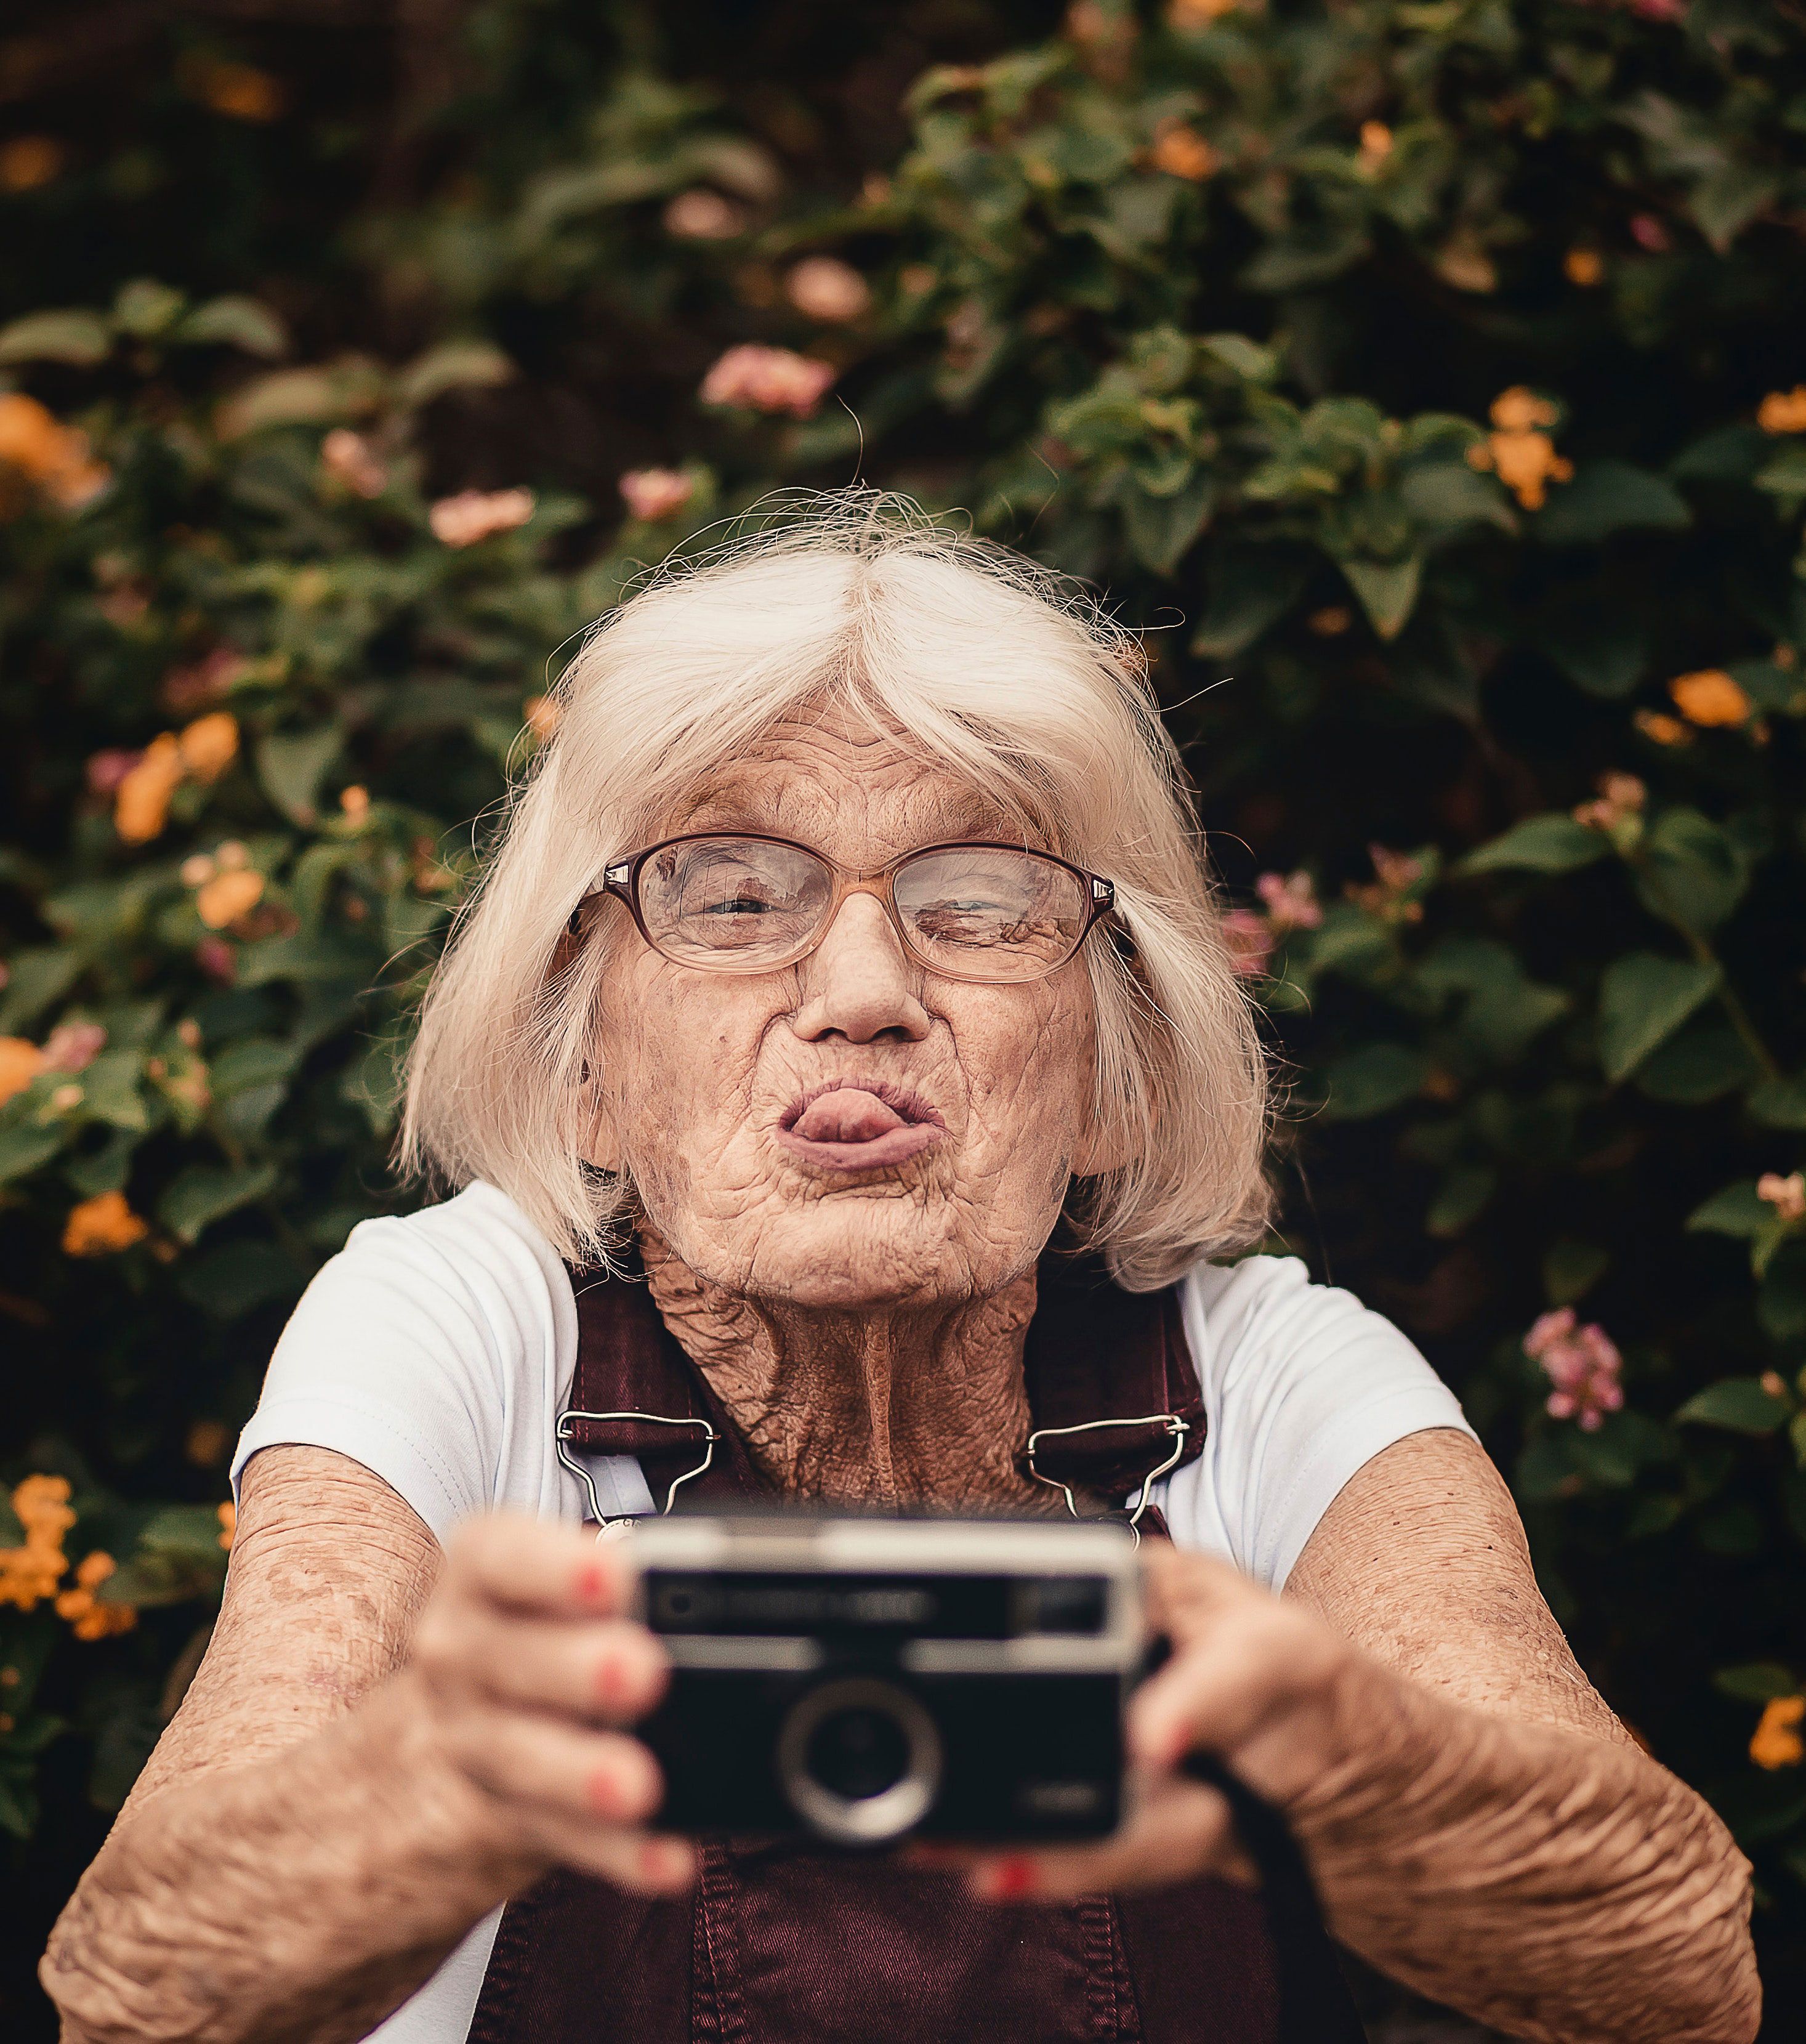 Für Selfies ist man nie zu alt